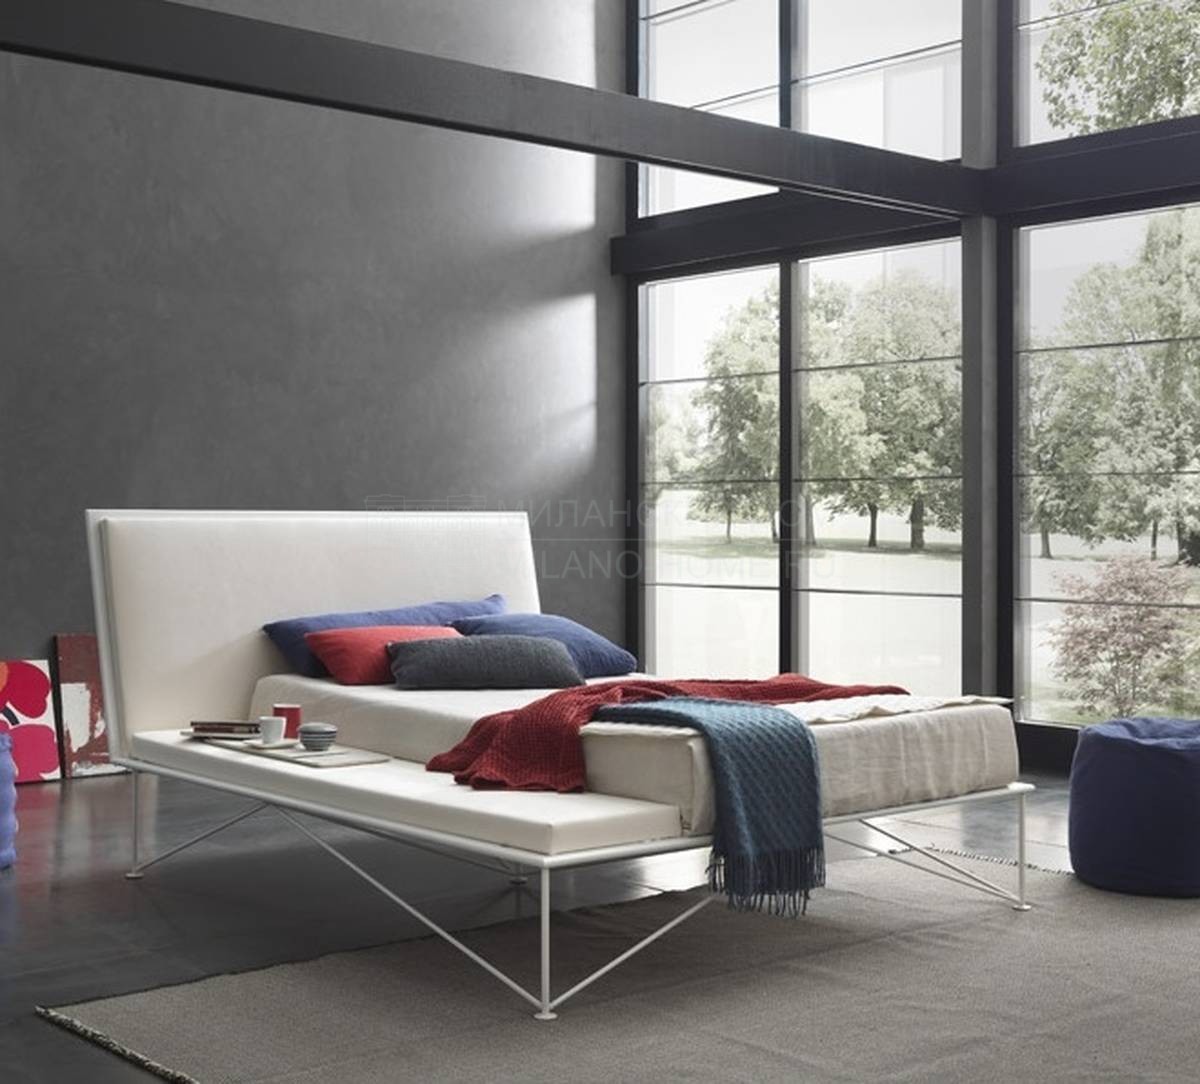 Двуспальная кровать Tulip Young из Италии фабрики BOLZAN